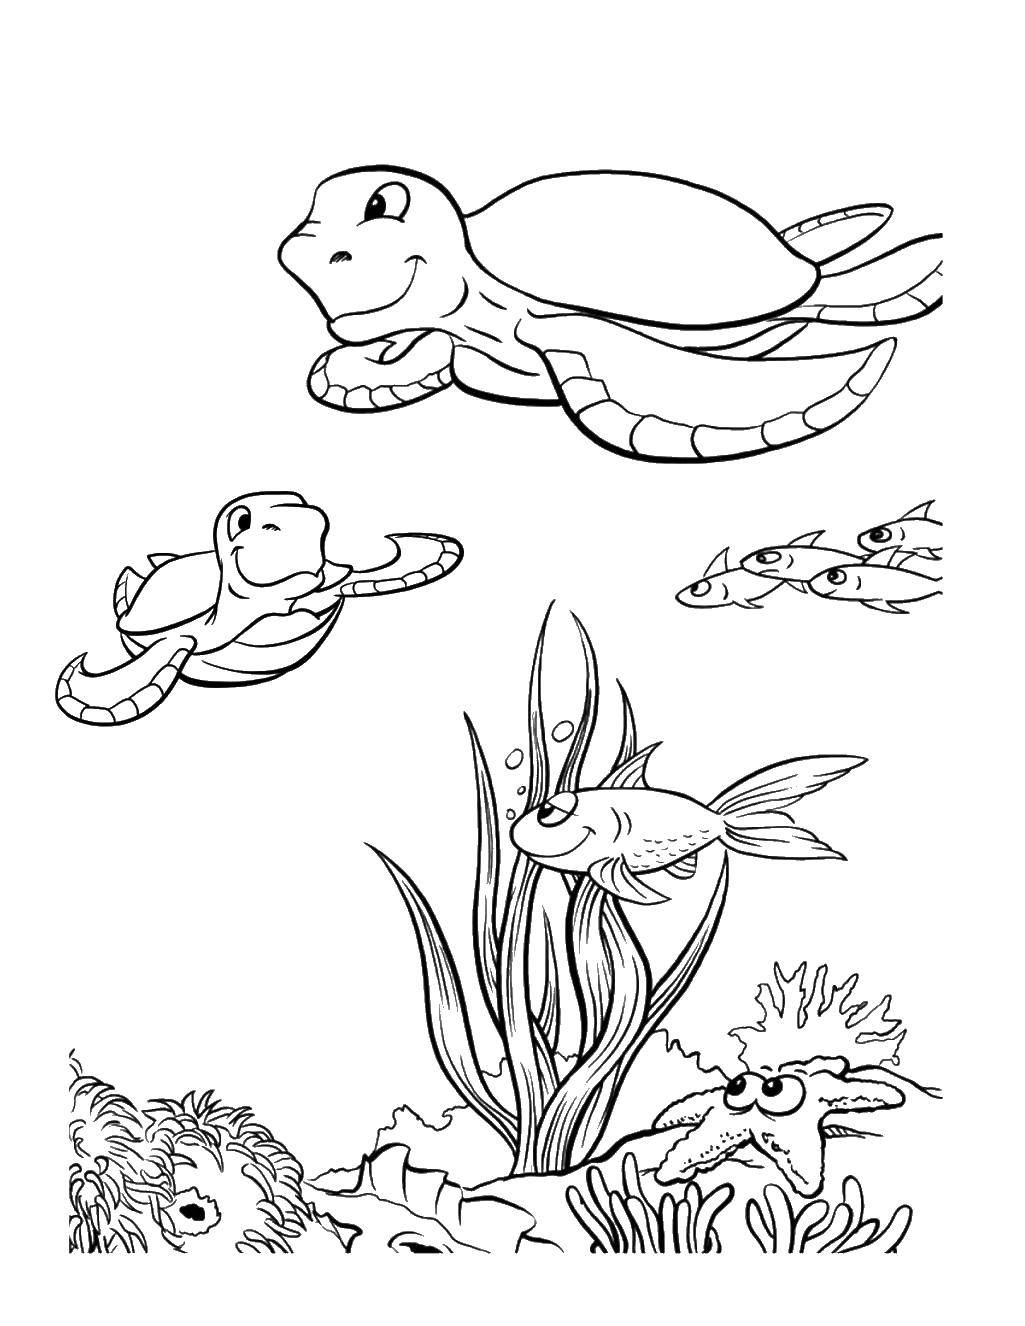 Название: Раскраска Счастливые морские черепашки. Категория: Морские животные. Теги: Рептилия, черепаха.